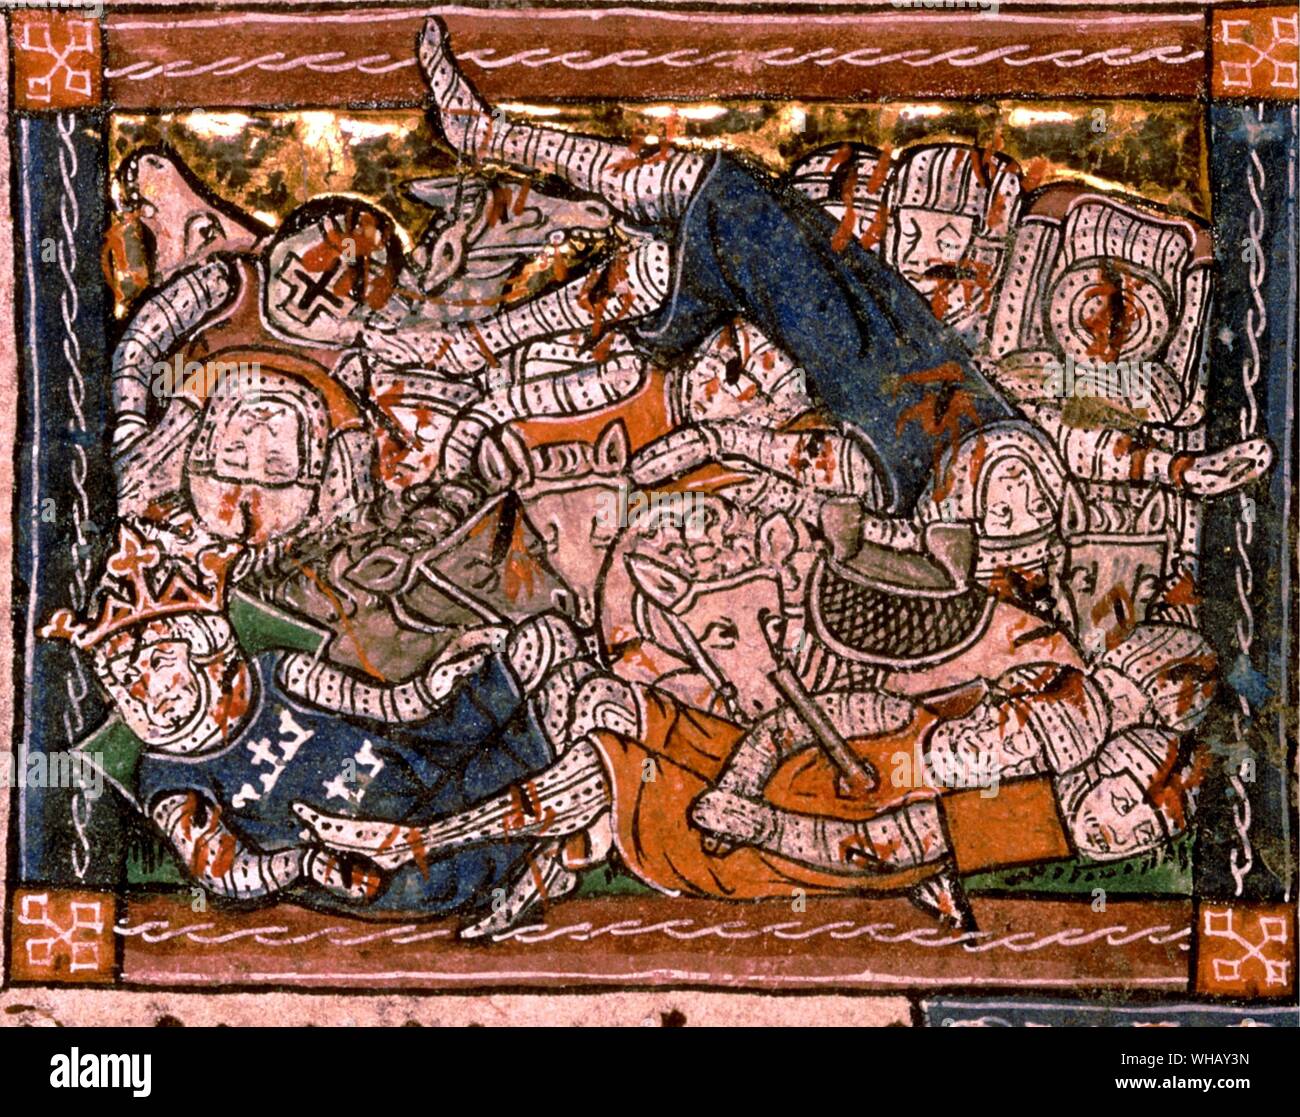 King Arthur, Battaglia di Camlann, del XIII secolo. La battaglia di Camlann è meglio conosciuta come la battaglia finale di Re Artù, dove egli sia morto in battaglia o era stato ferito a morte. King Arthur, pagina 32. Foto Stock